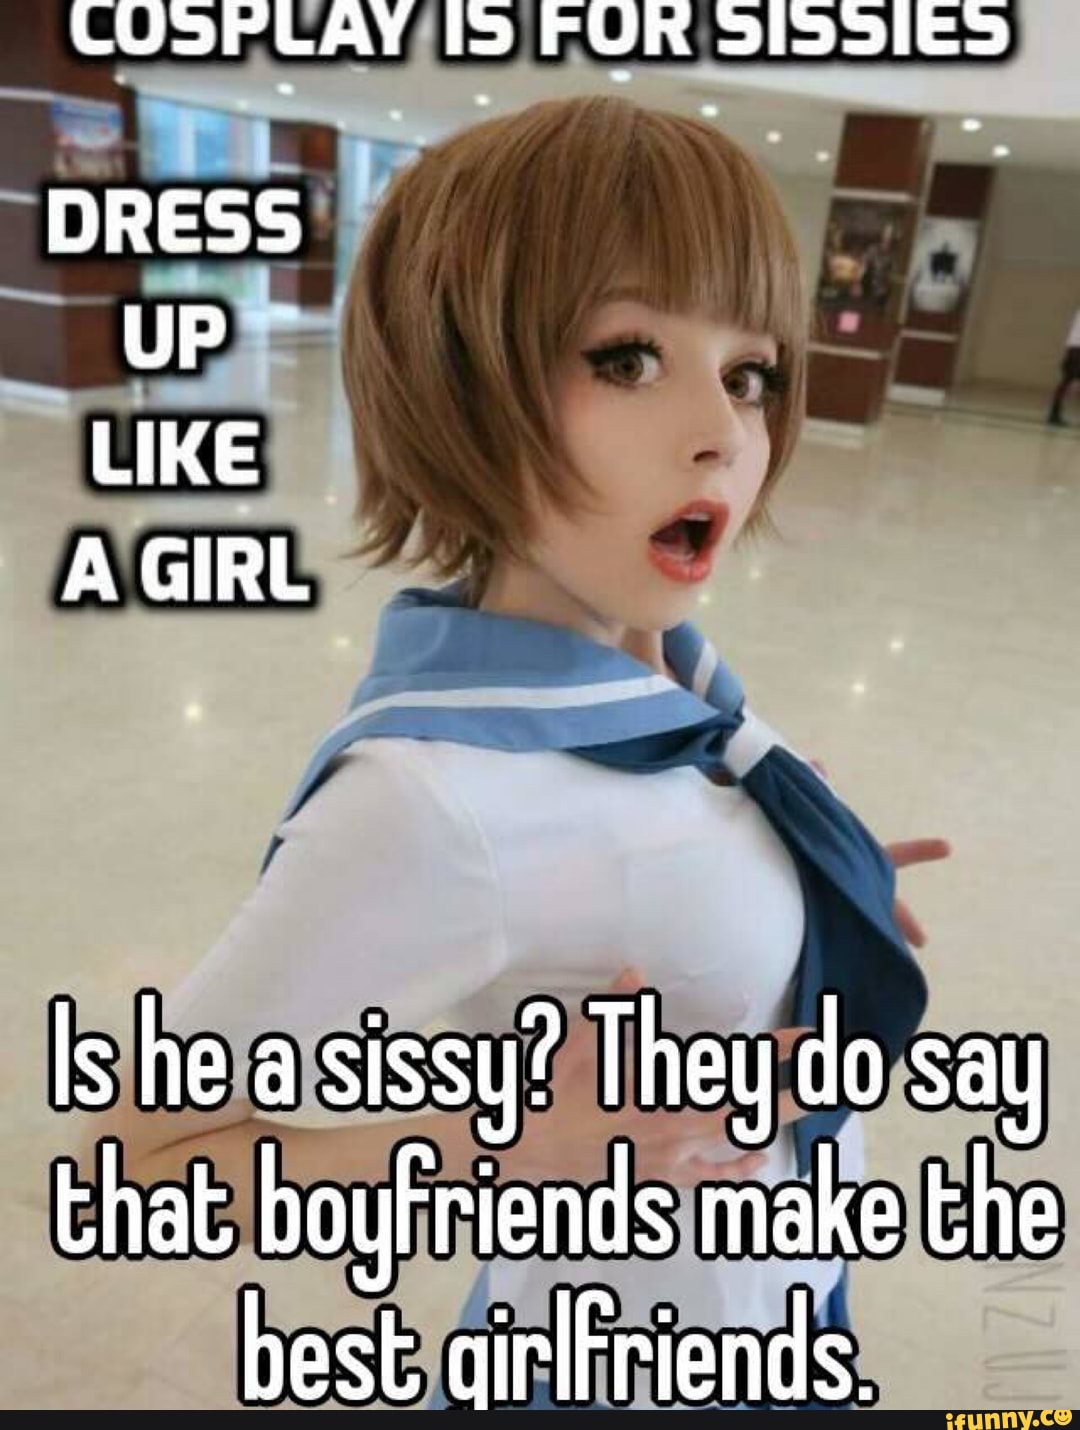 Is it true sissy boys make the best girlfriends?